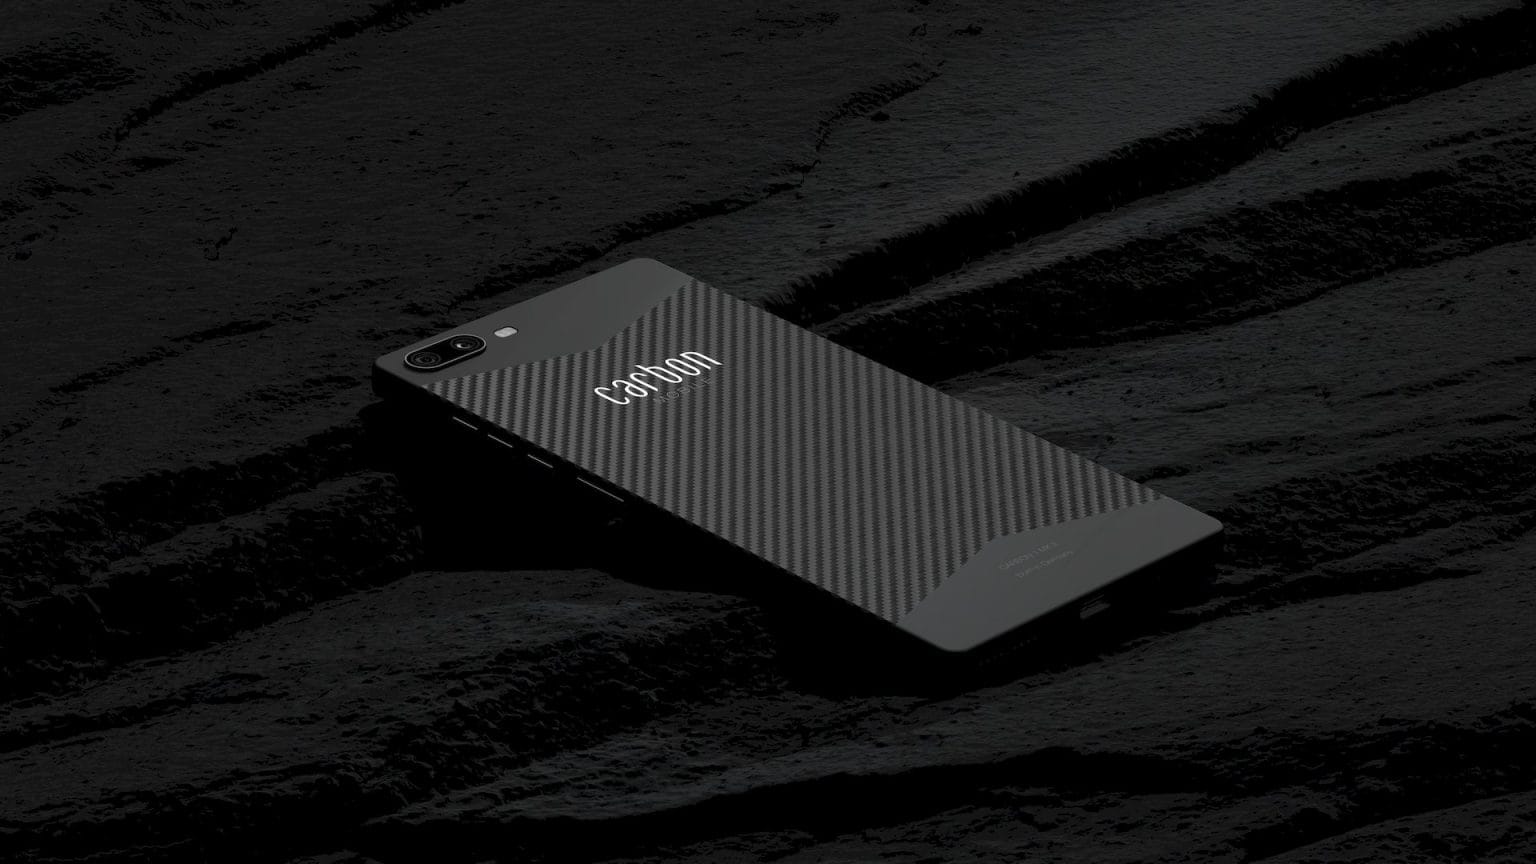 Carbon 1 MK II è il primo smartphone interamente in fibra di carbonio. Ecco le specifiche (foto)